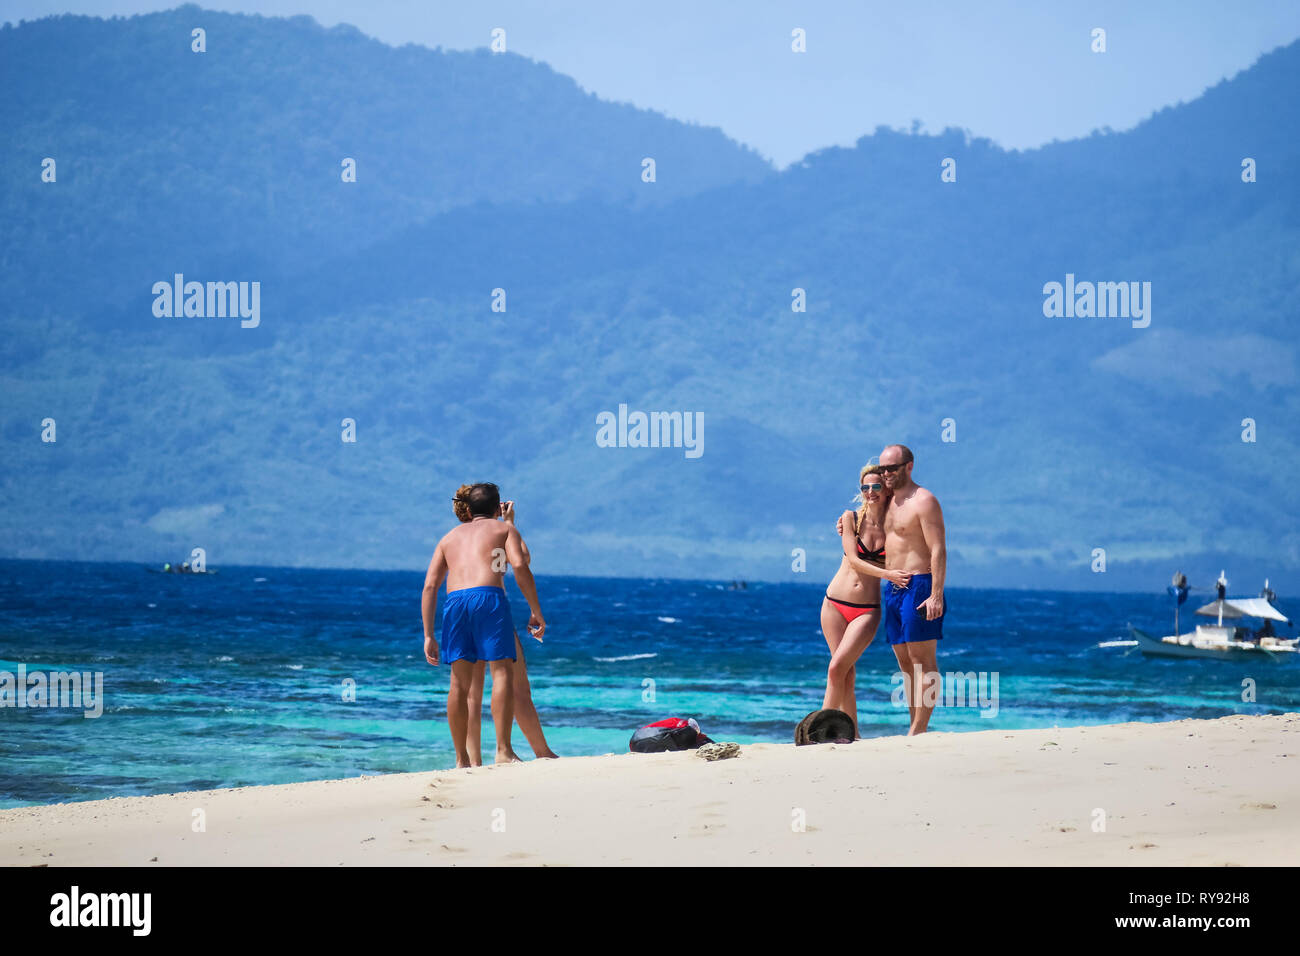 Turistico europeo prendendo le coppie di foto delle vacanze sulla spiaggia di sabbia bianca - Isola di Linapacan, Palawan - Filippine Foto Stock